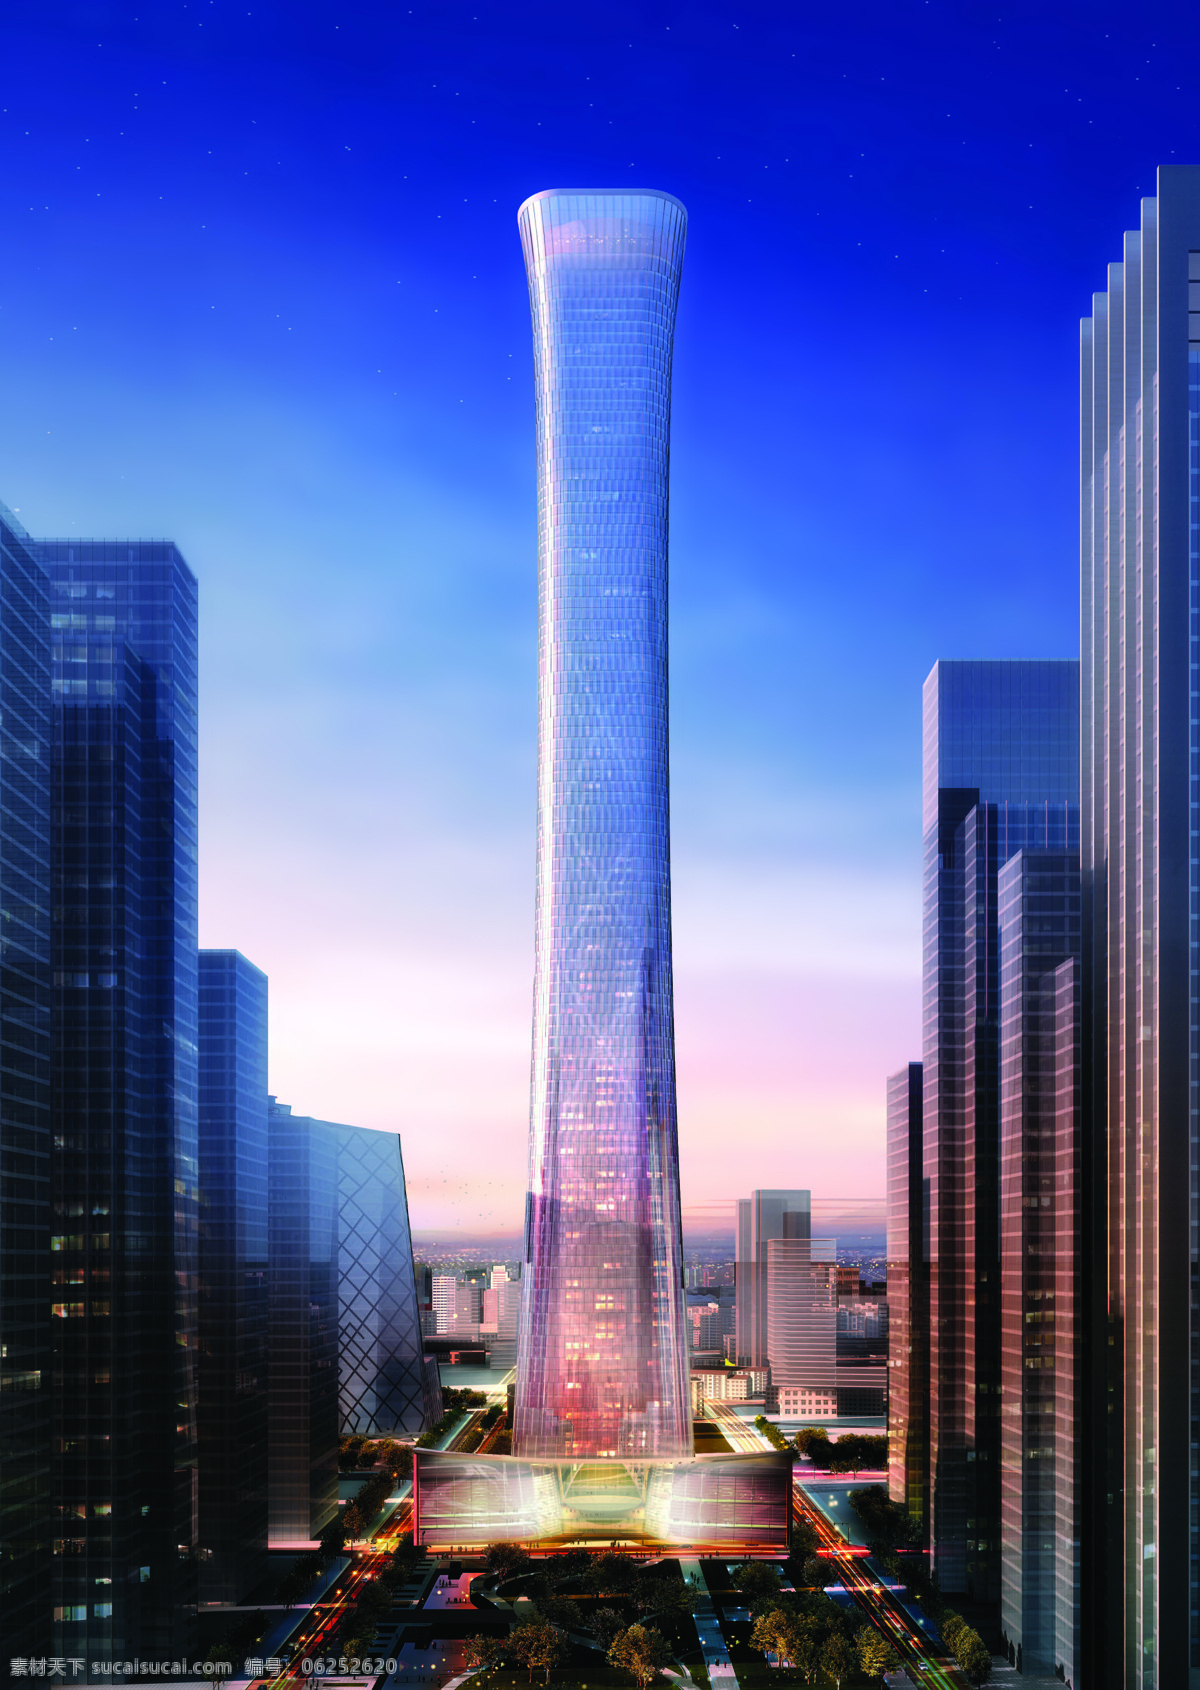 中国尊 建筑 北京市 cbd 效果图 最高 摩天大楼 建筑设计 环境设计